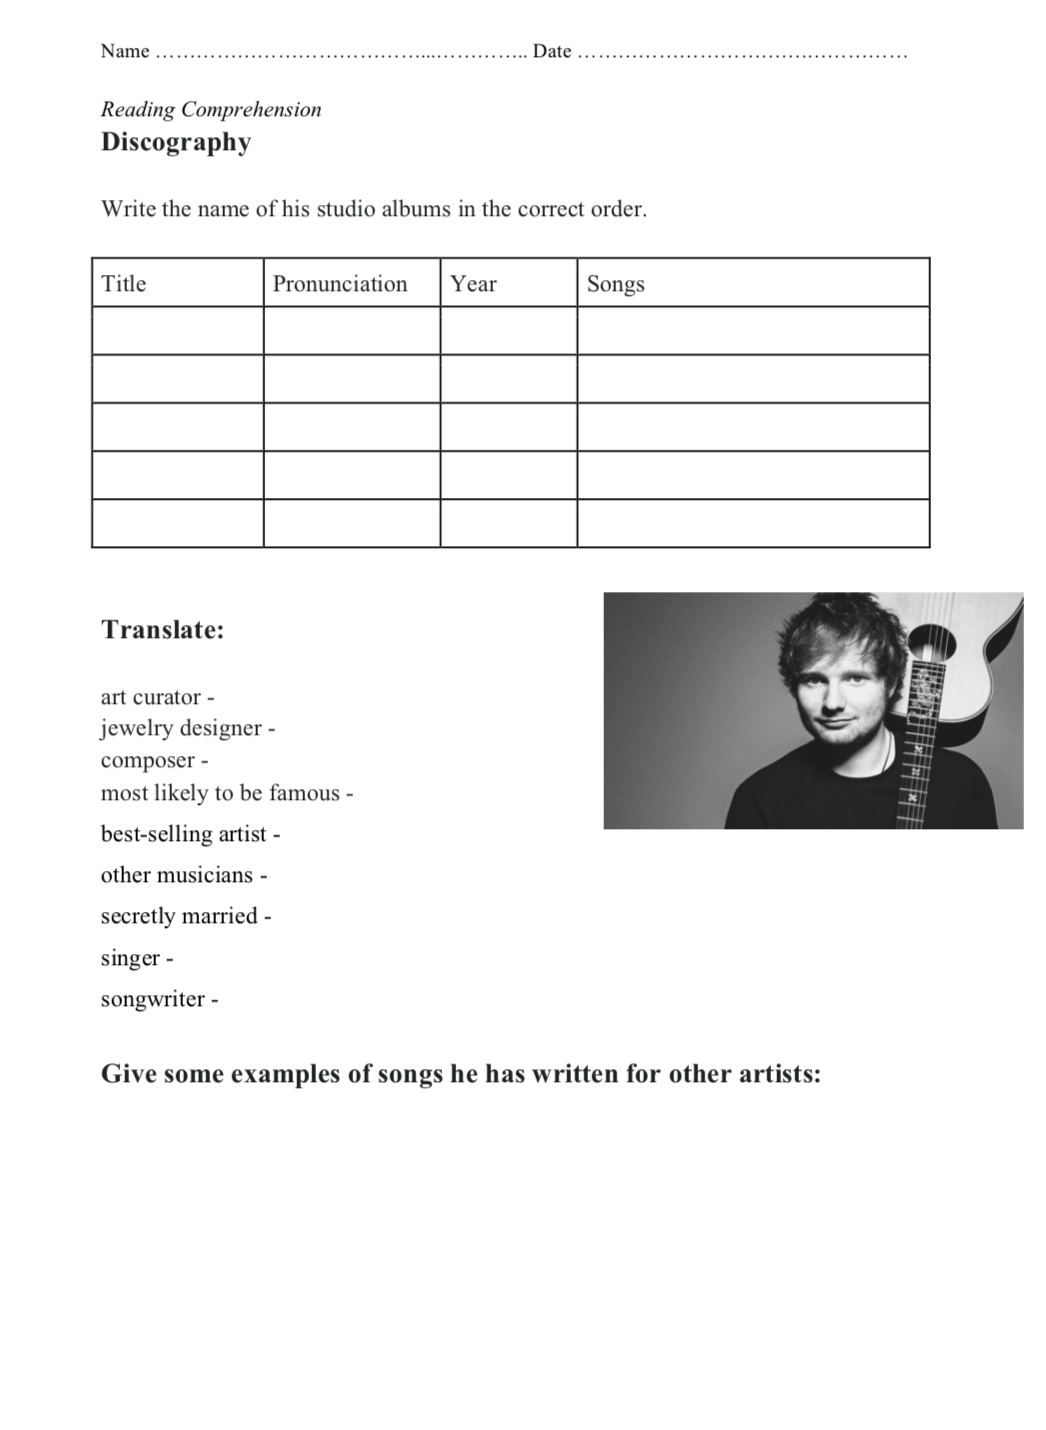 Ed Sheeran - Reading Comprehension